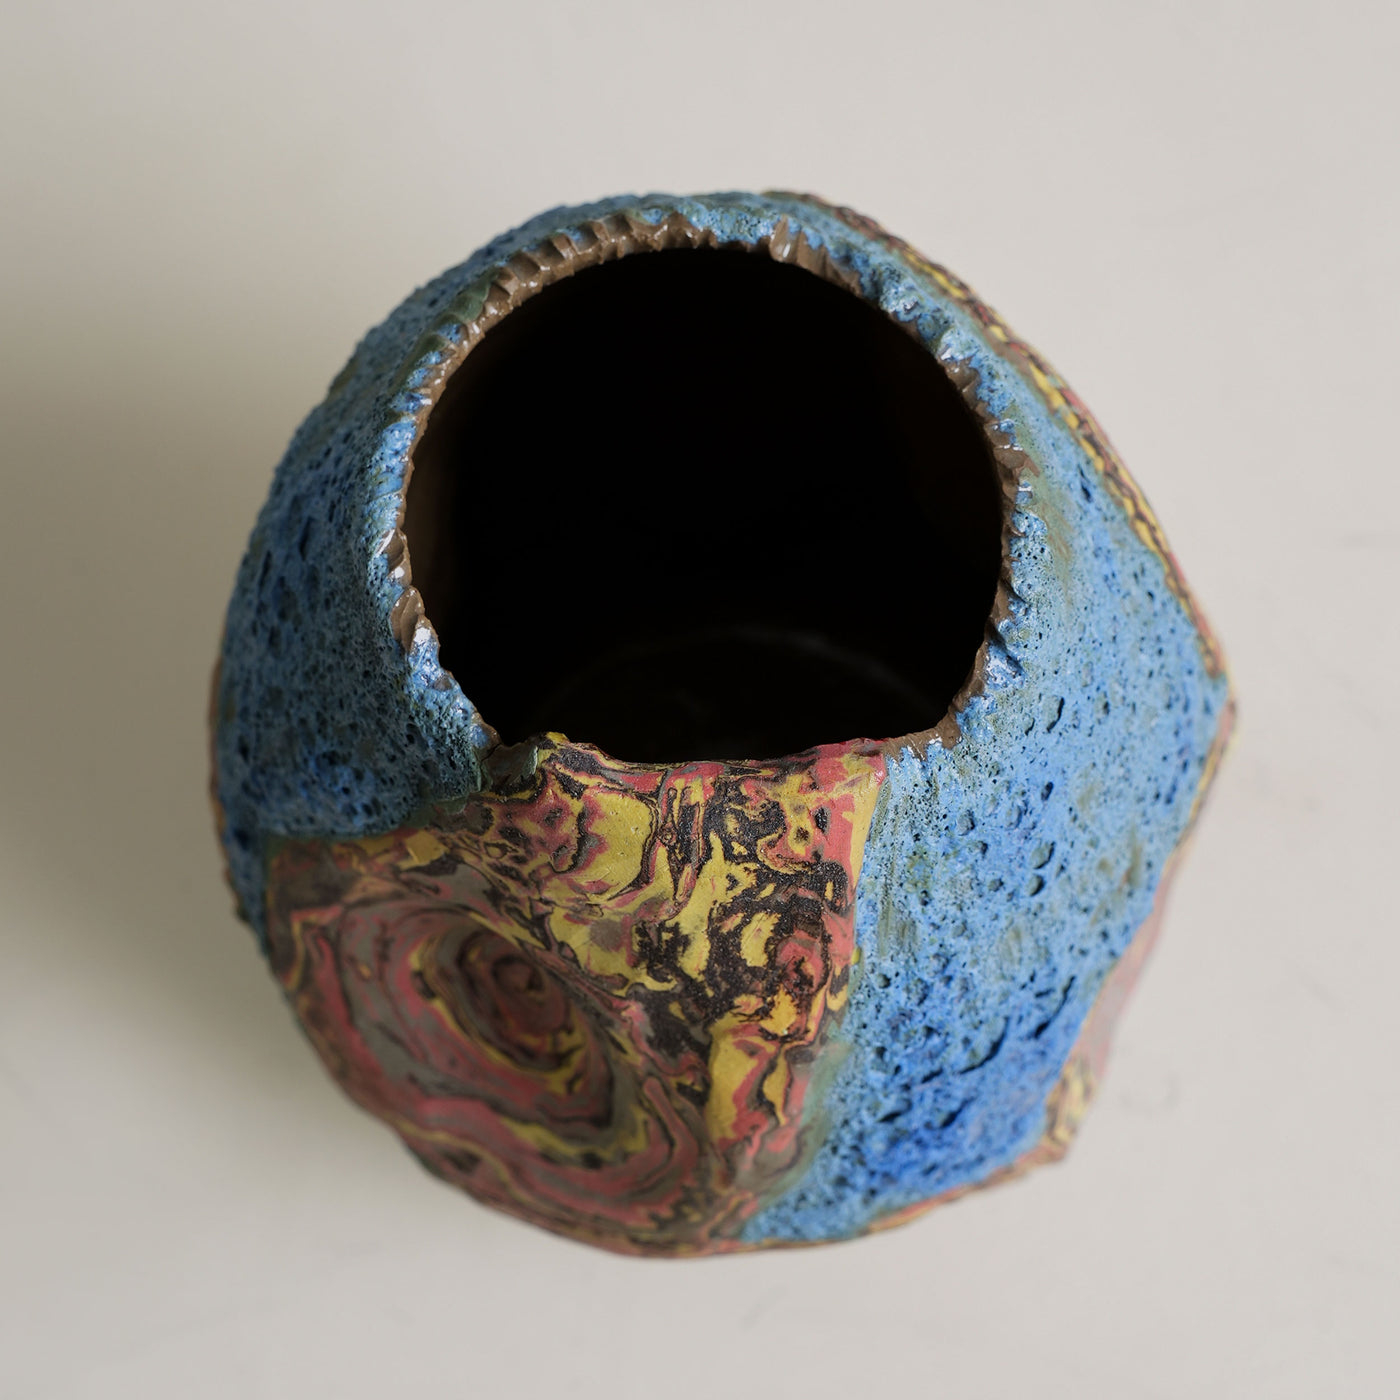 Textured Marbled Vase